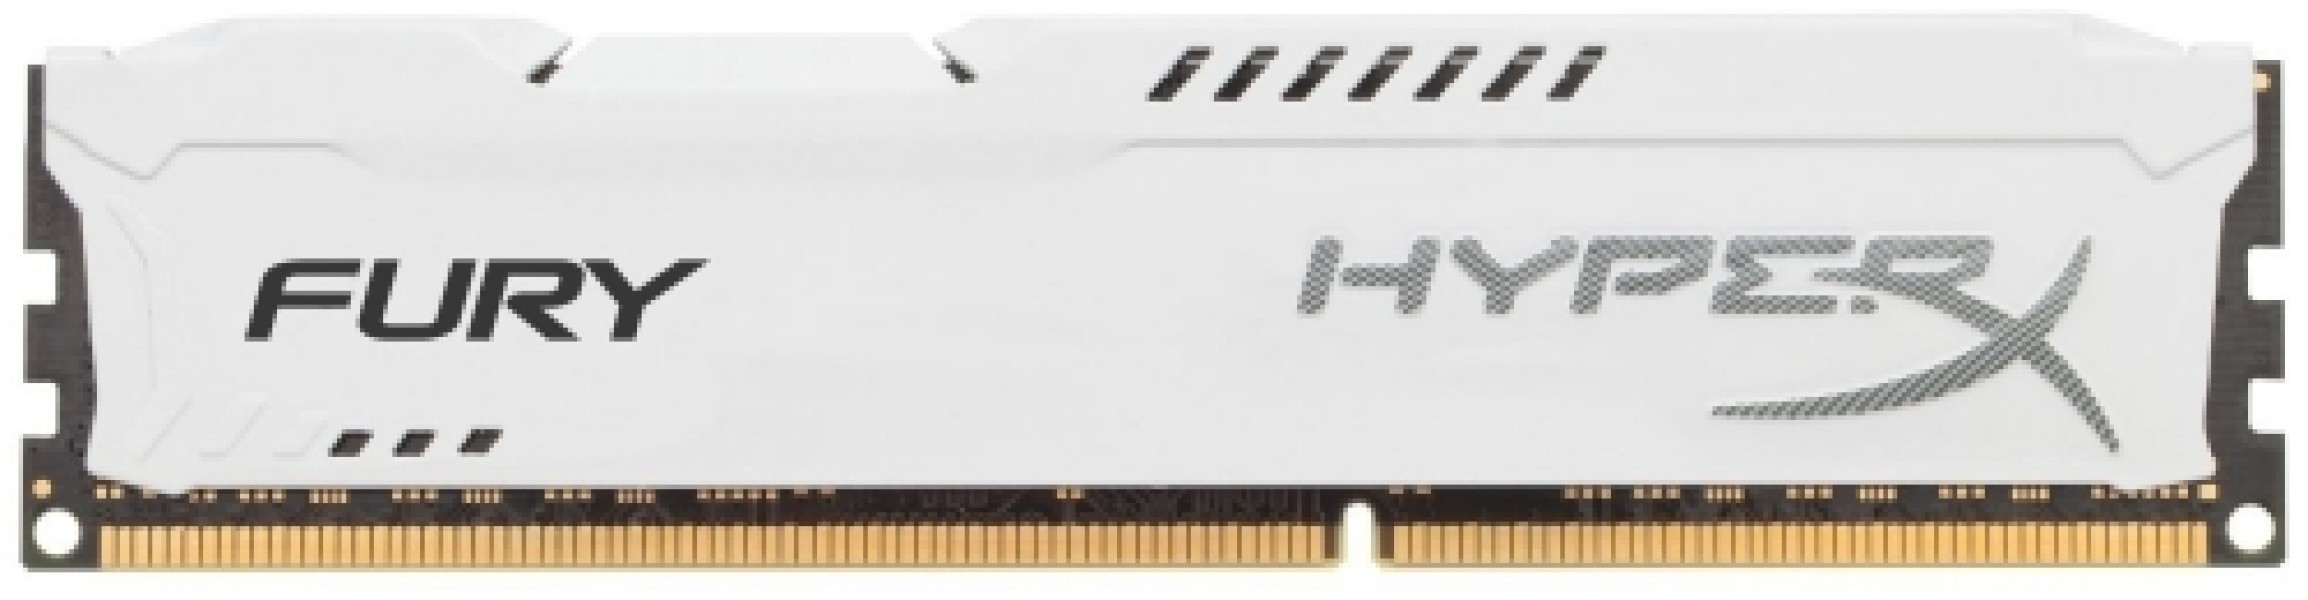 Kingston 4GB DDR3 PC12800 CL10 DIMM HyperX Fury White HX316C10FW/4